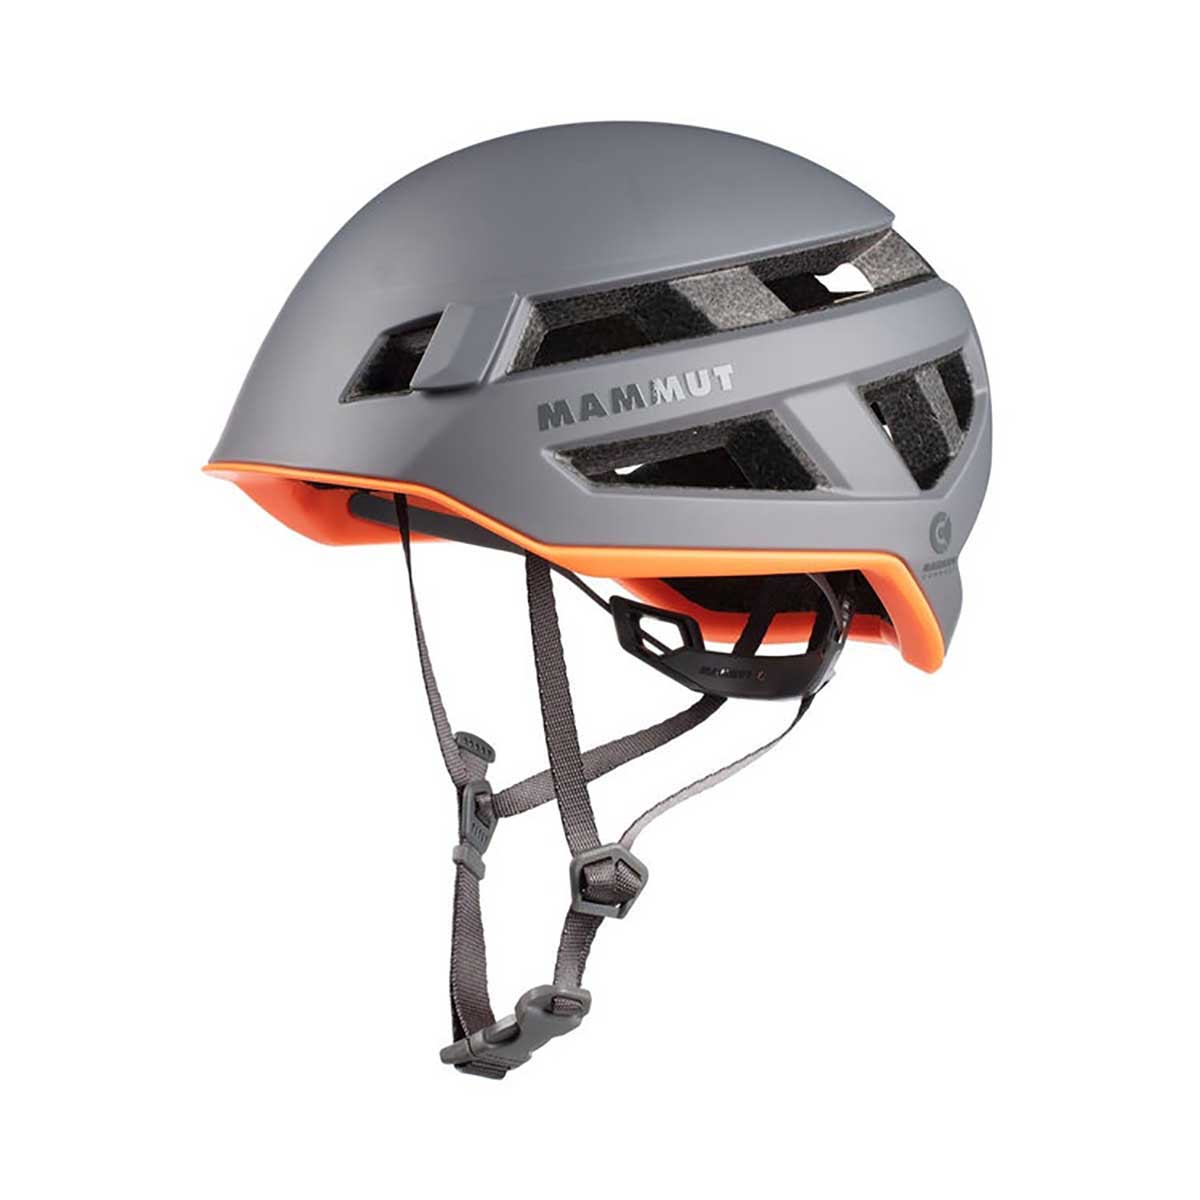 MAMMUT(マムート) 2030-00260 Crag Sender Helmet メンズ レディース クライミング ヘルメット